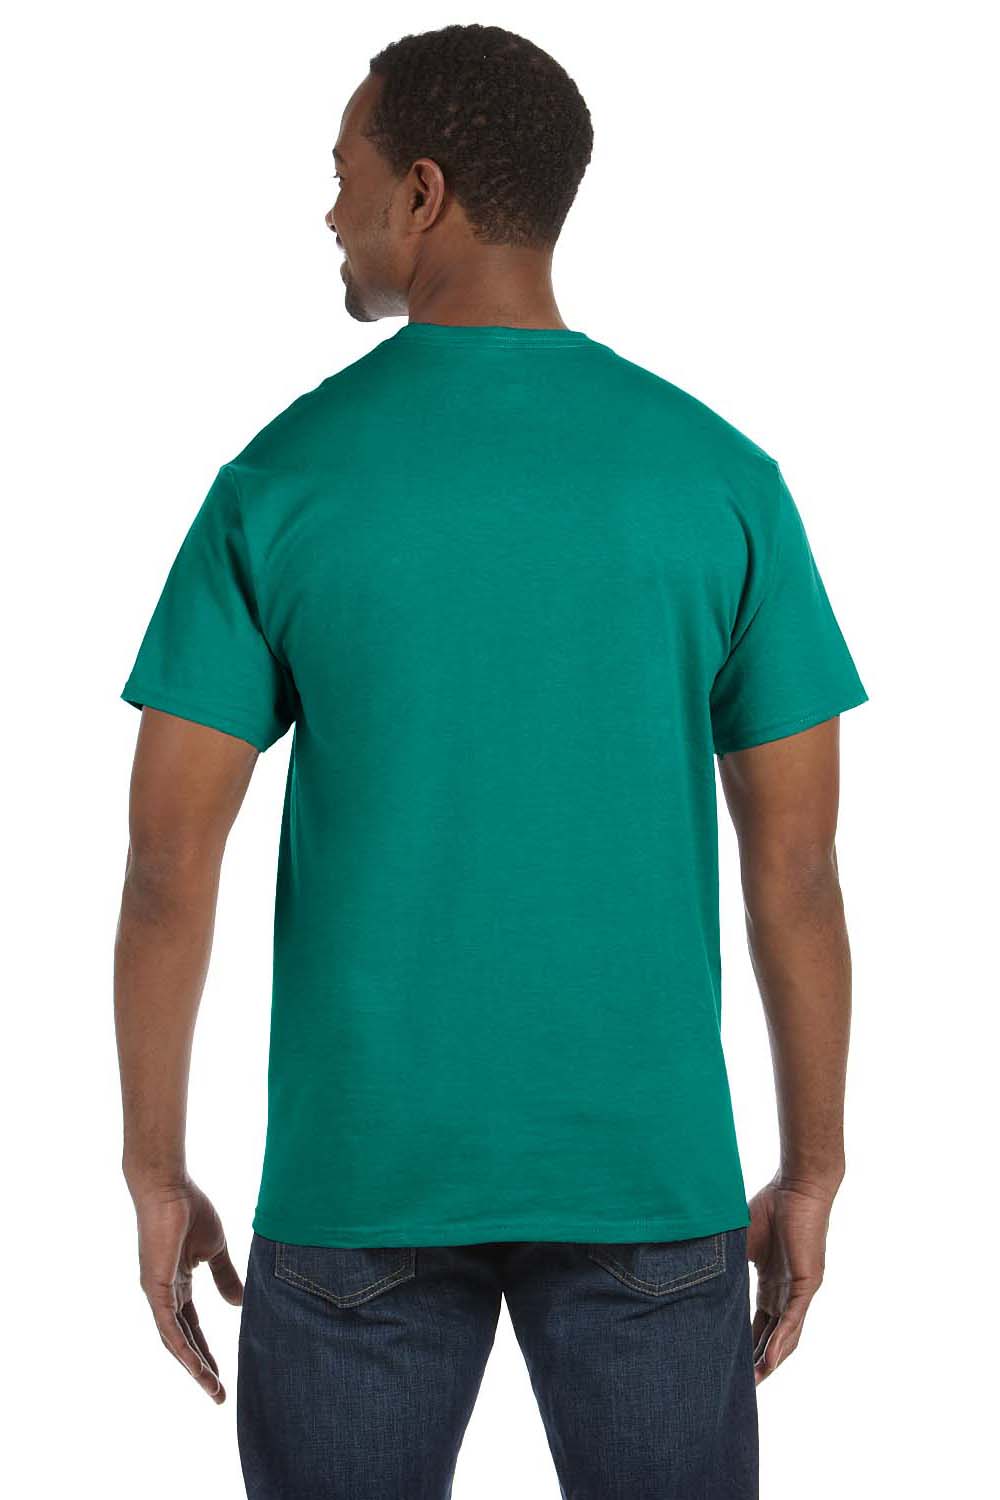 Jerzees 29M Mens Dri-Power Moisture Wicking Short Sleeve Crewneck T-Shirt Jade Green Back